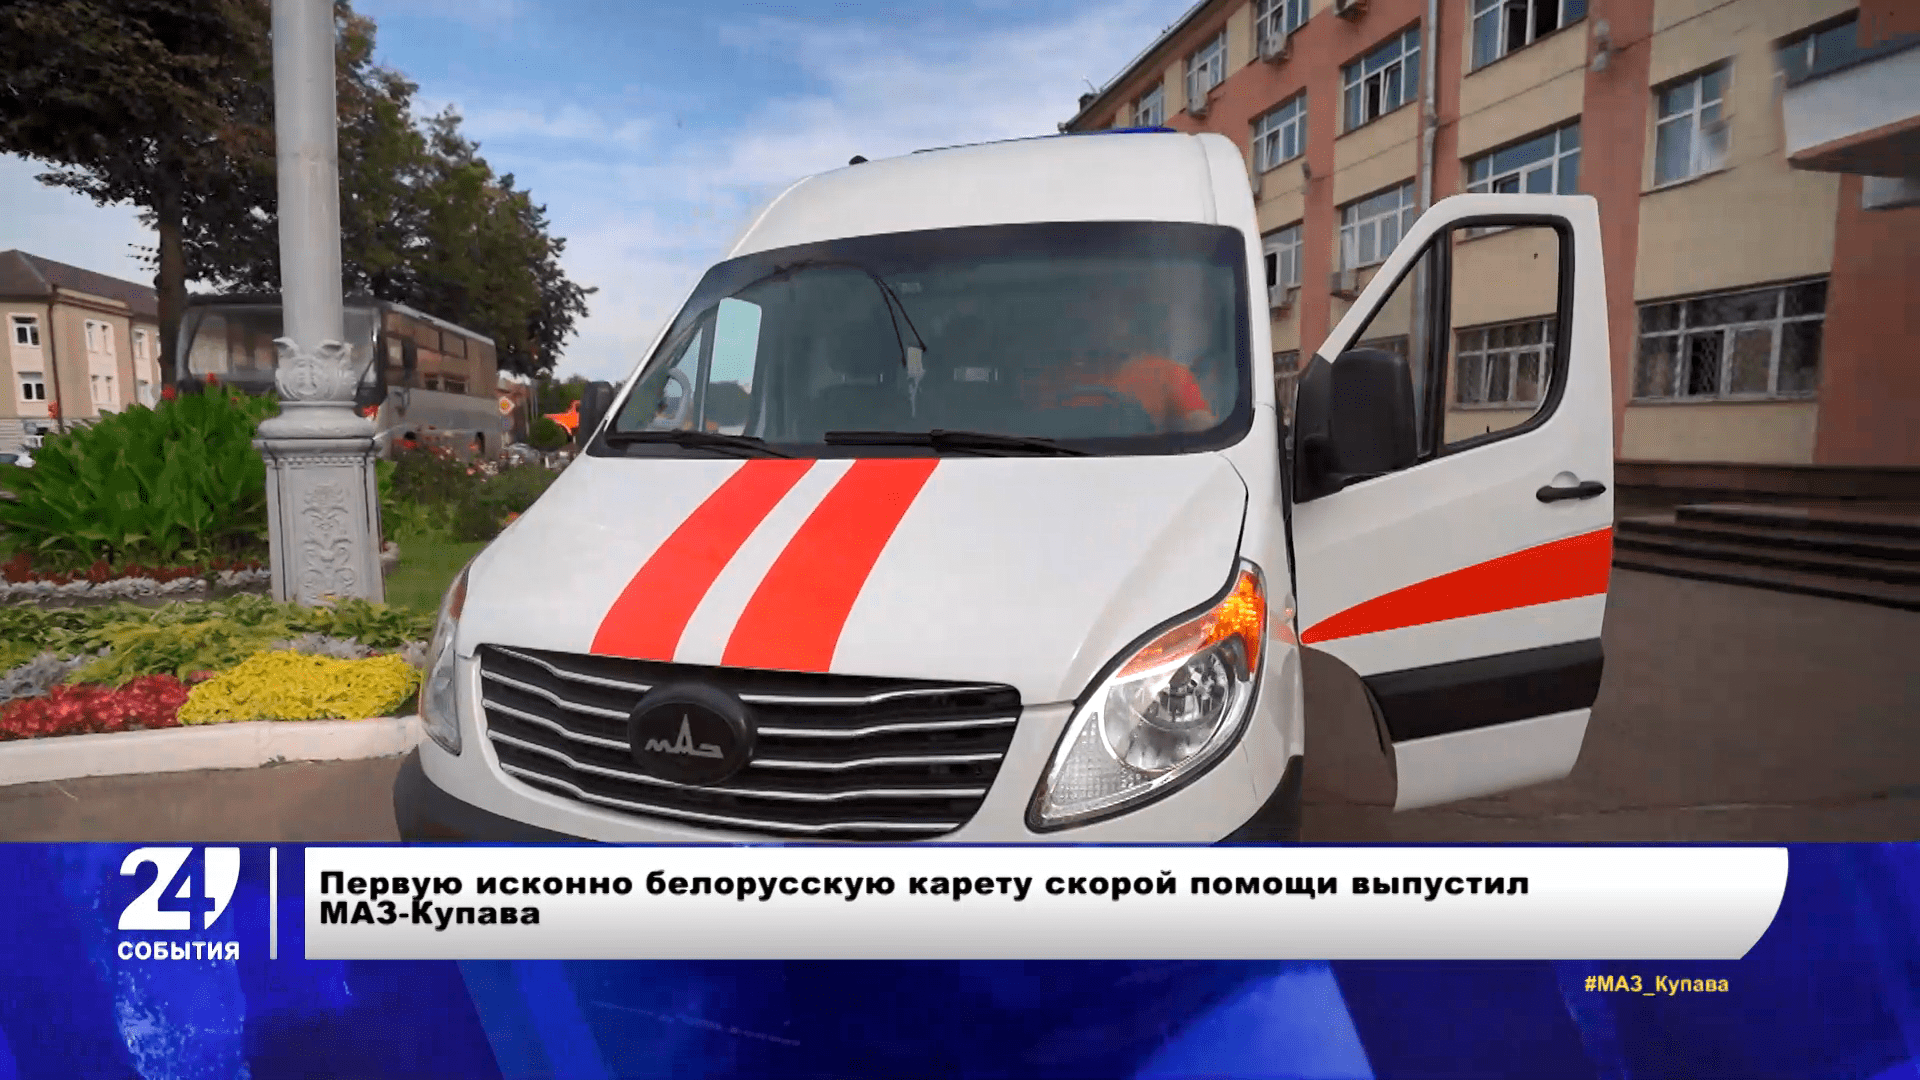 Белорусская карета скорой помощи, местные виды топлива и новая форма сборной Беларуси по футболу